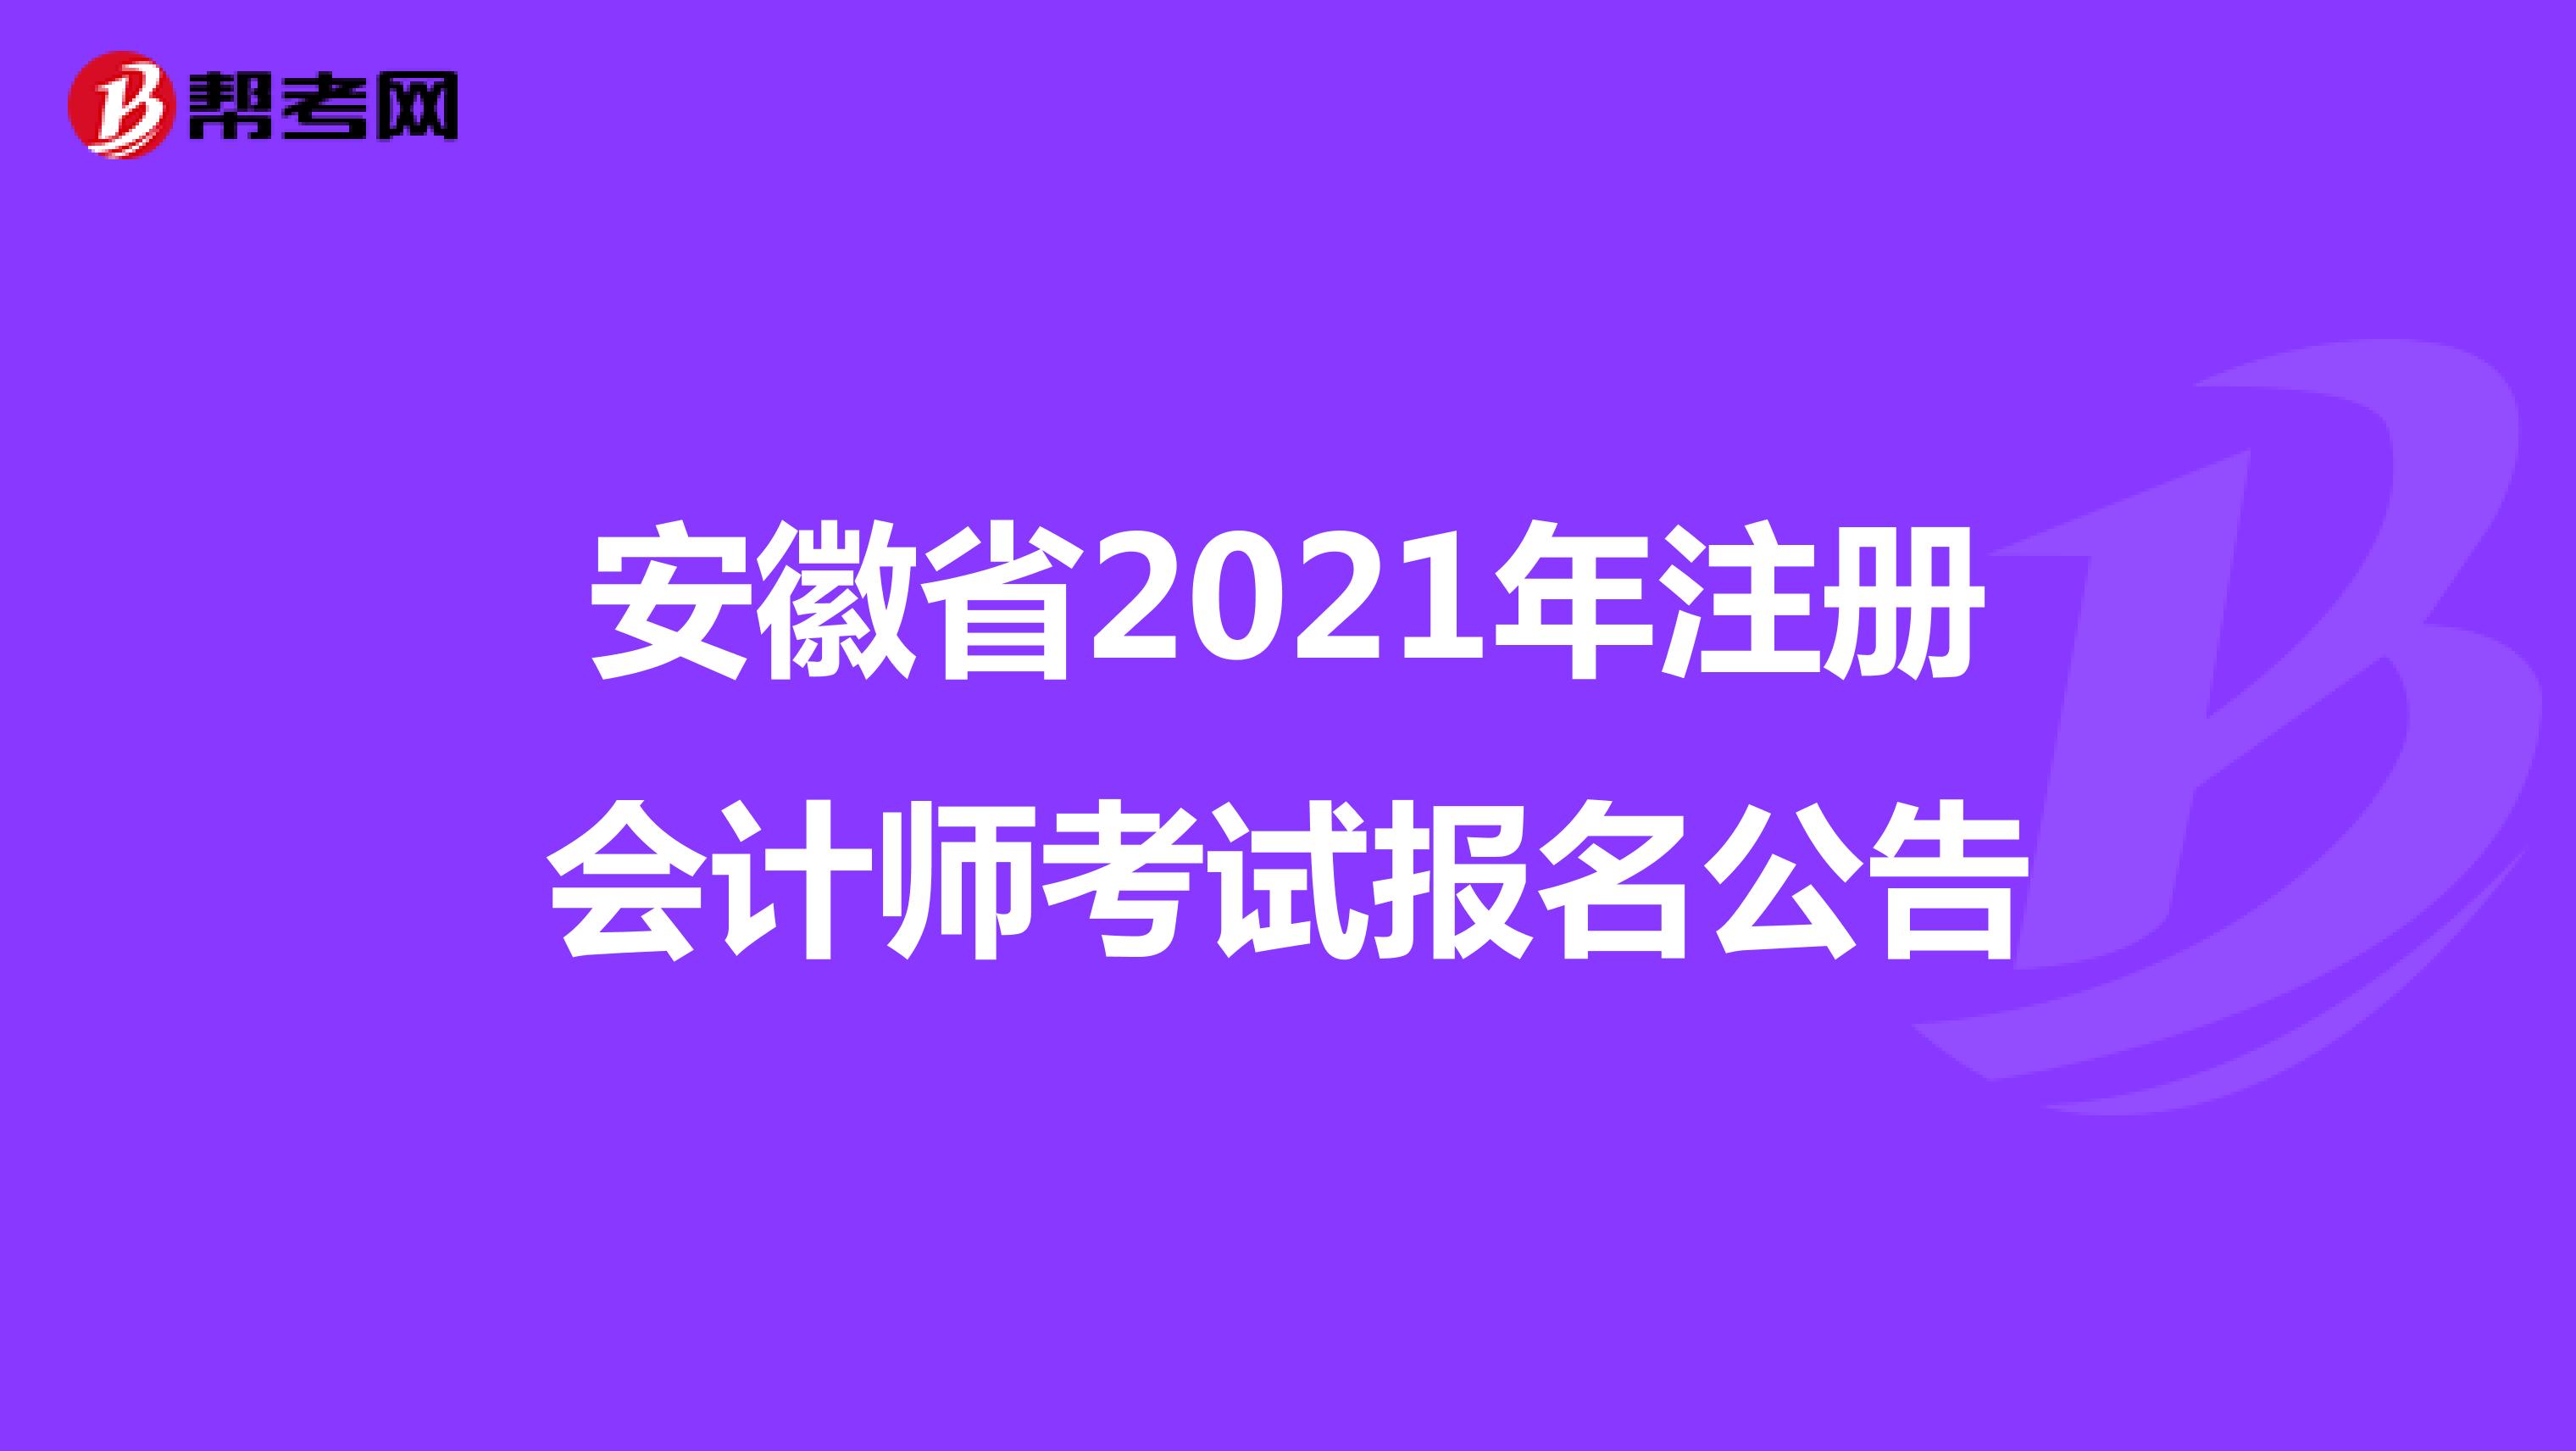 安徽省2021年注册会计师考试报名公告